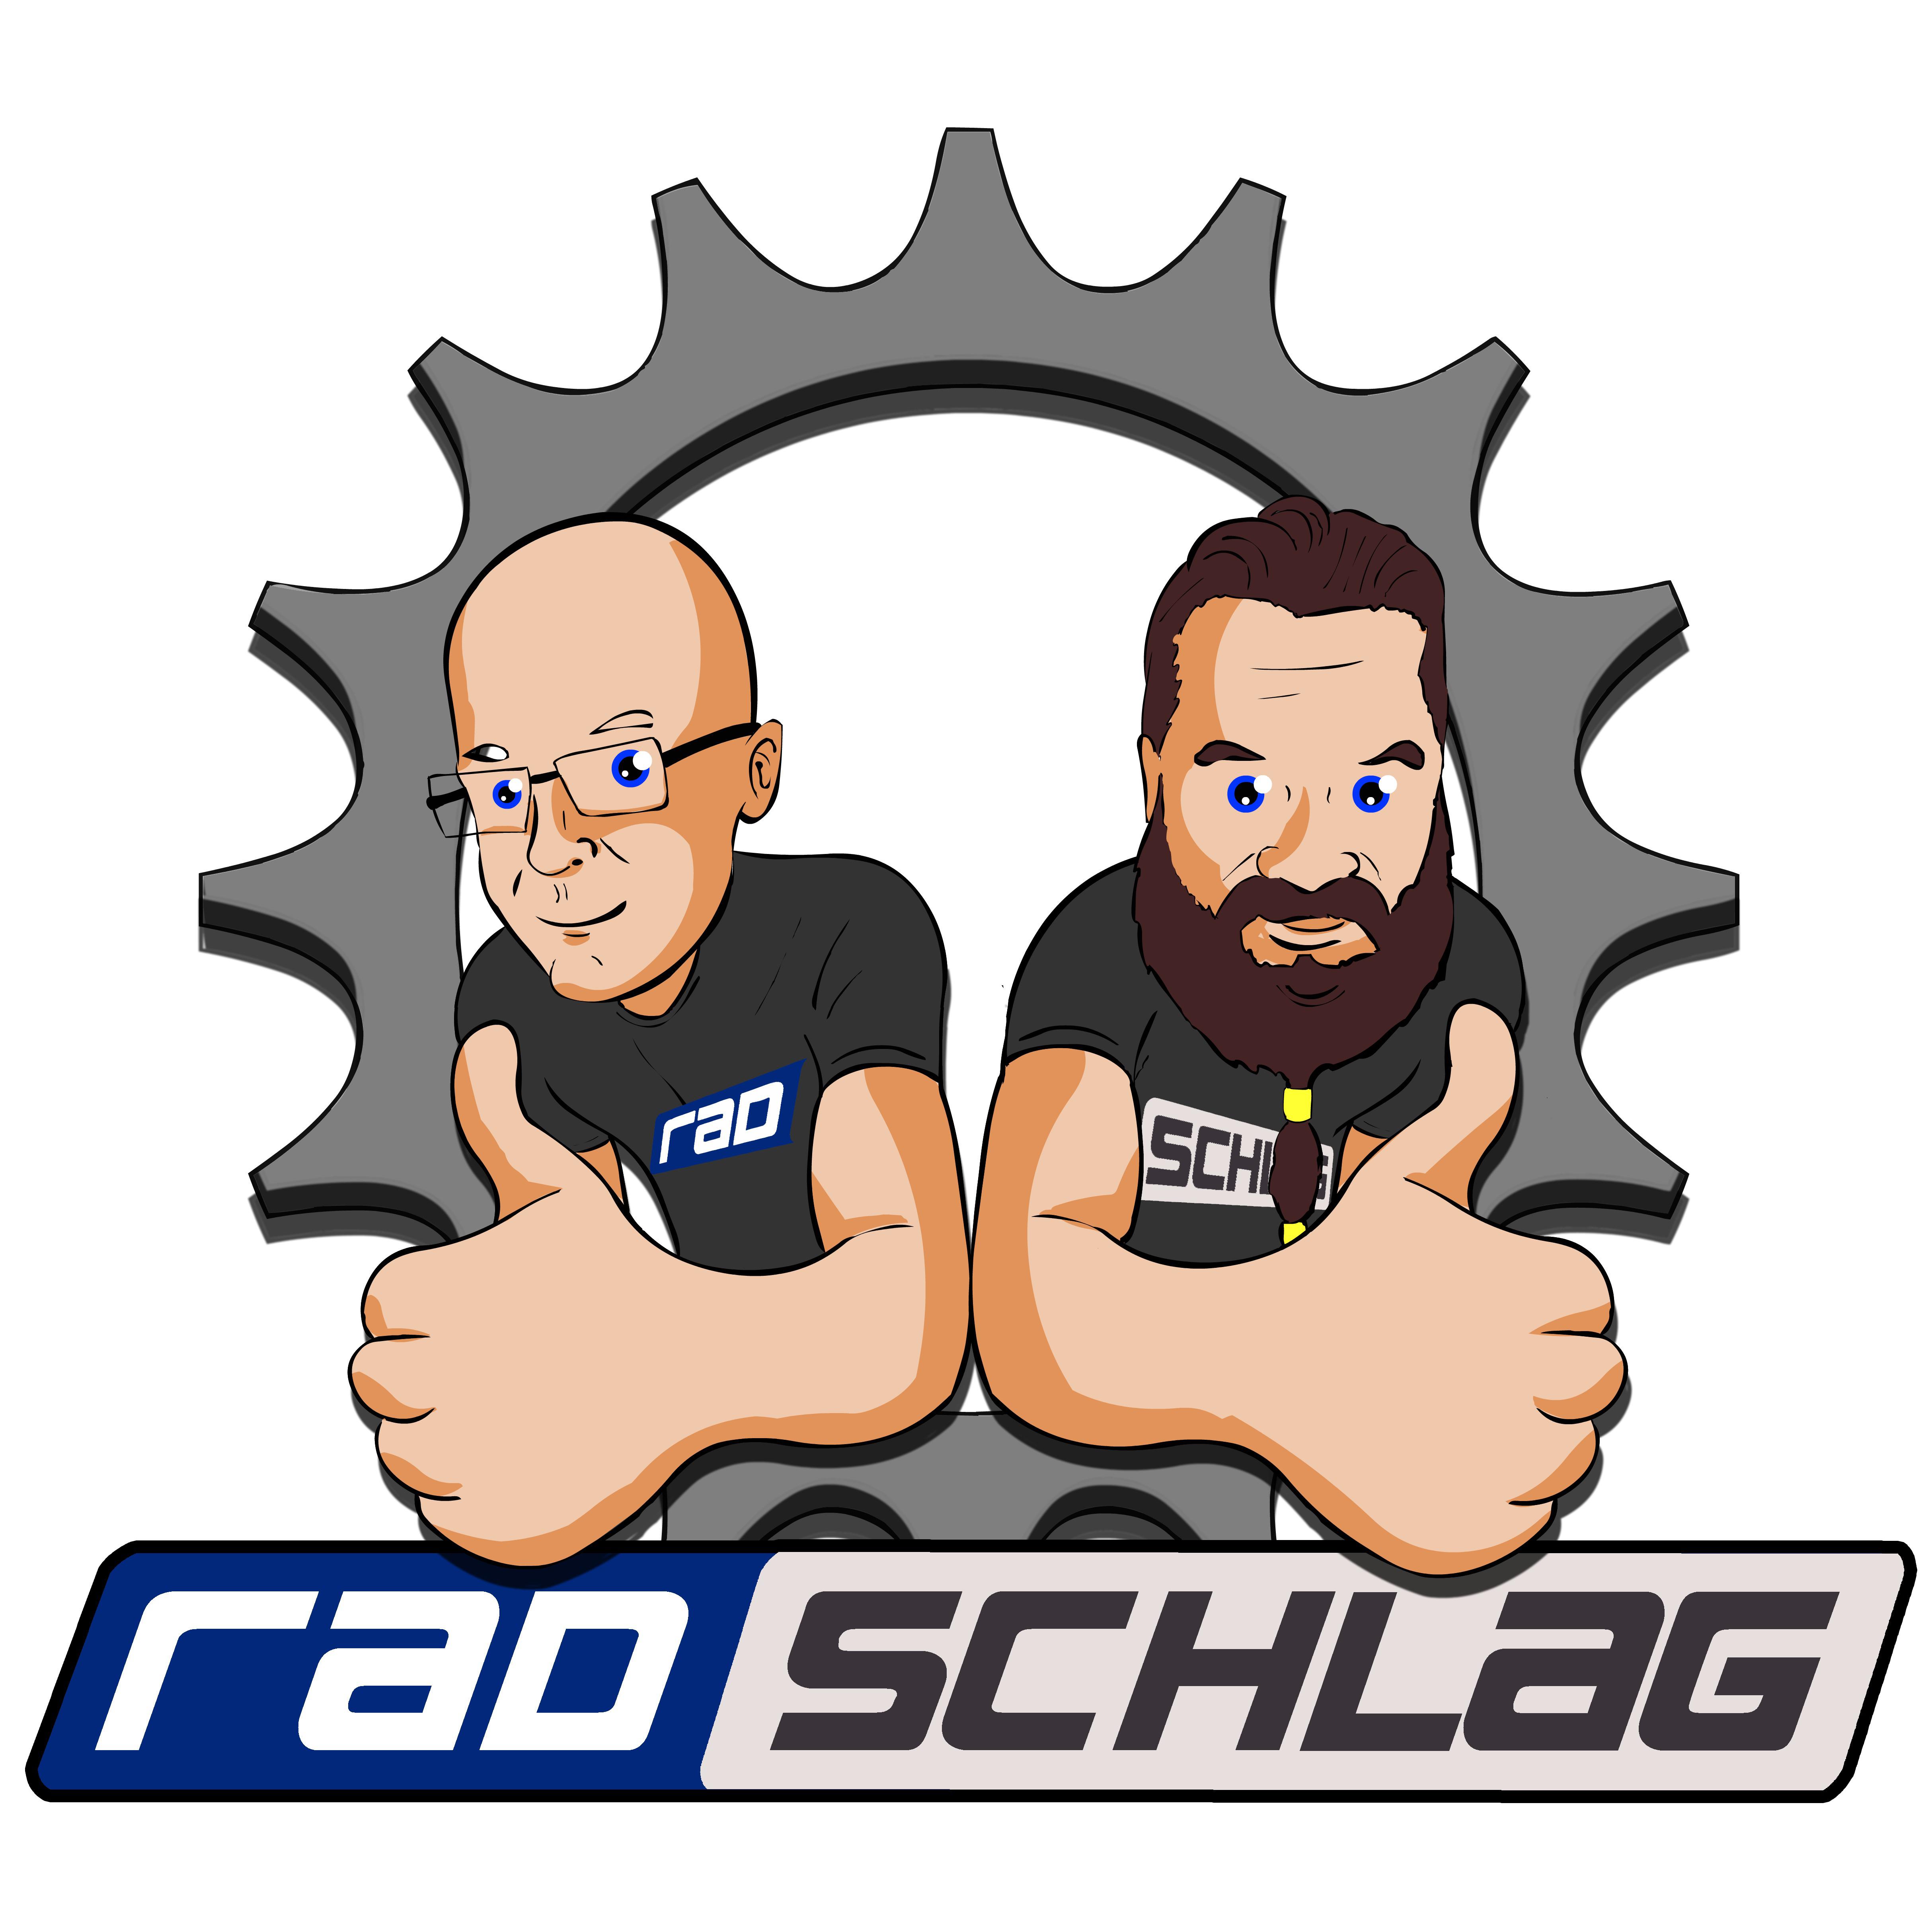 Logo radschlag - Fahrradladen Inh. Dirk Nachtmann